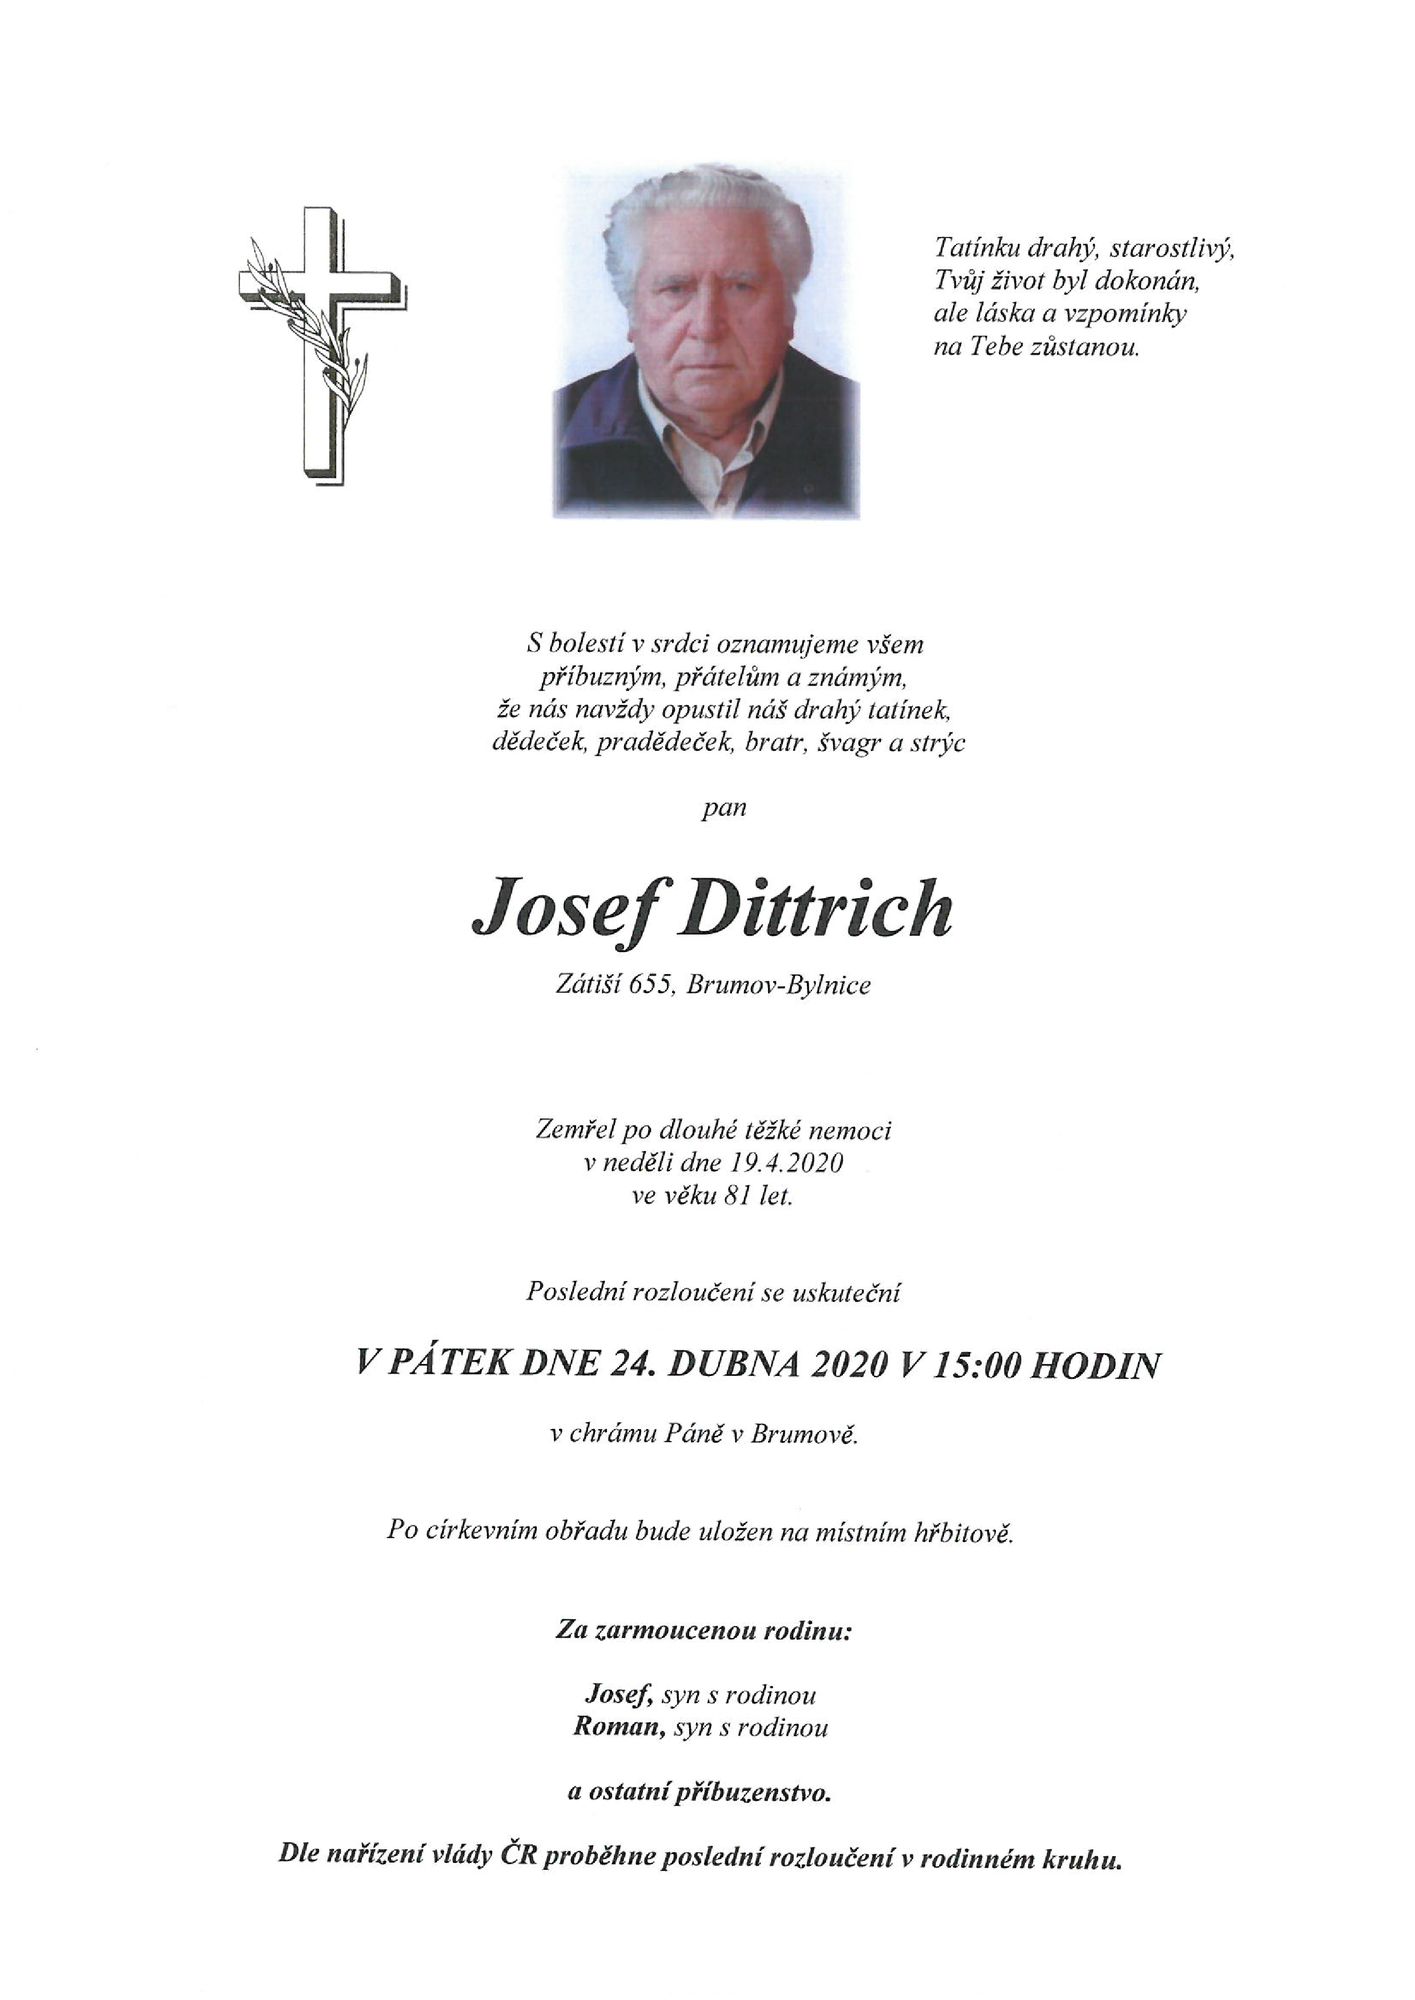 Josef Dittrich